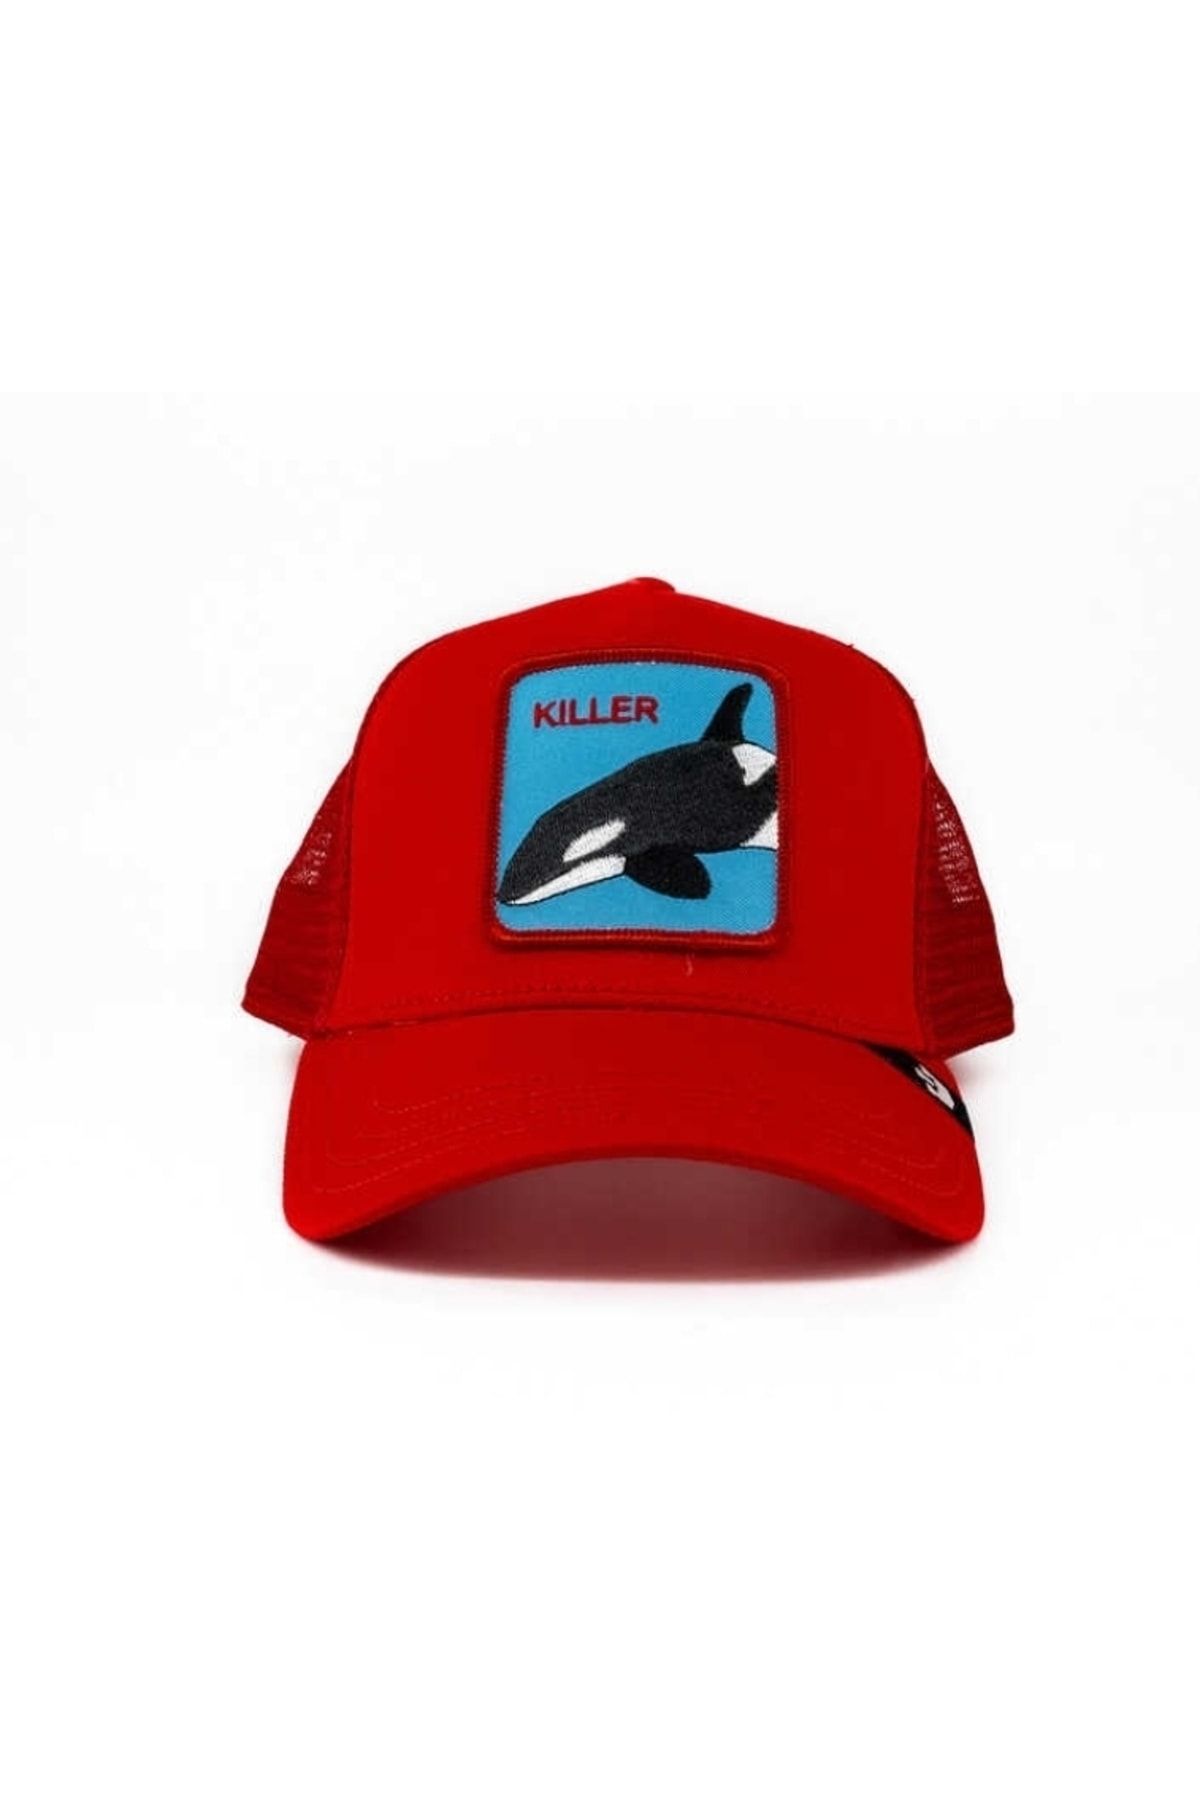 Goorin Bros S Kıller Whale Balina Figürlü Şapka 101-0626